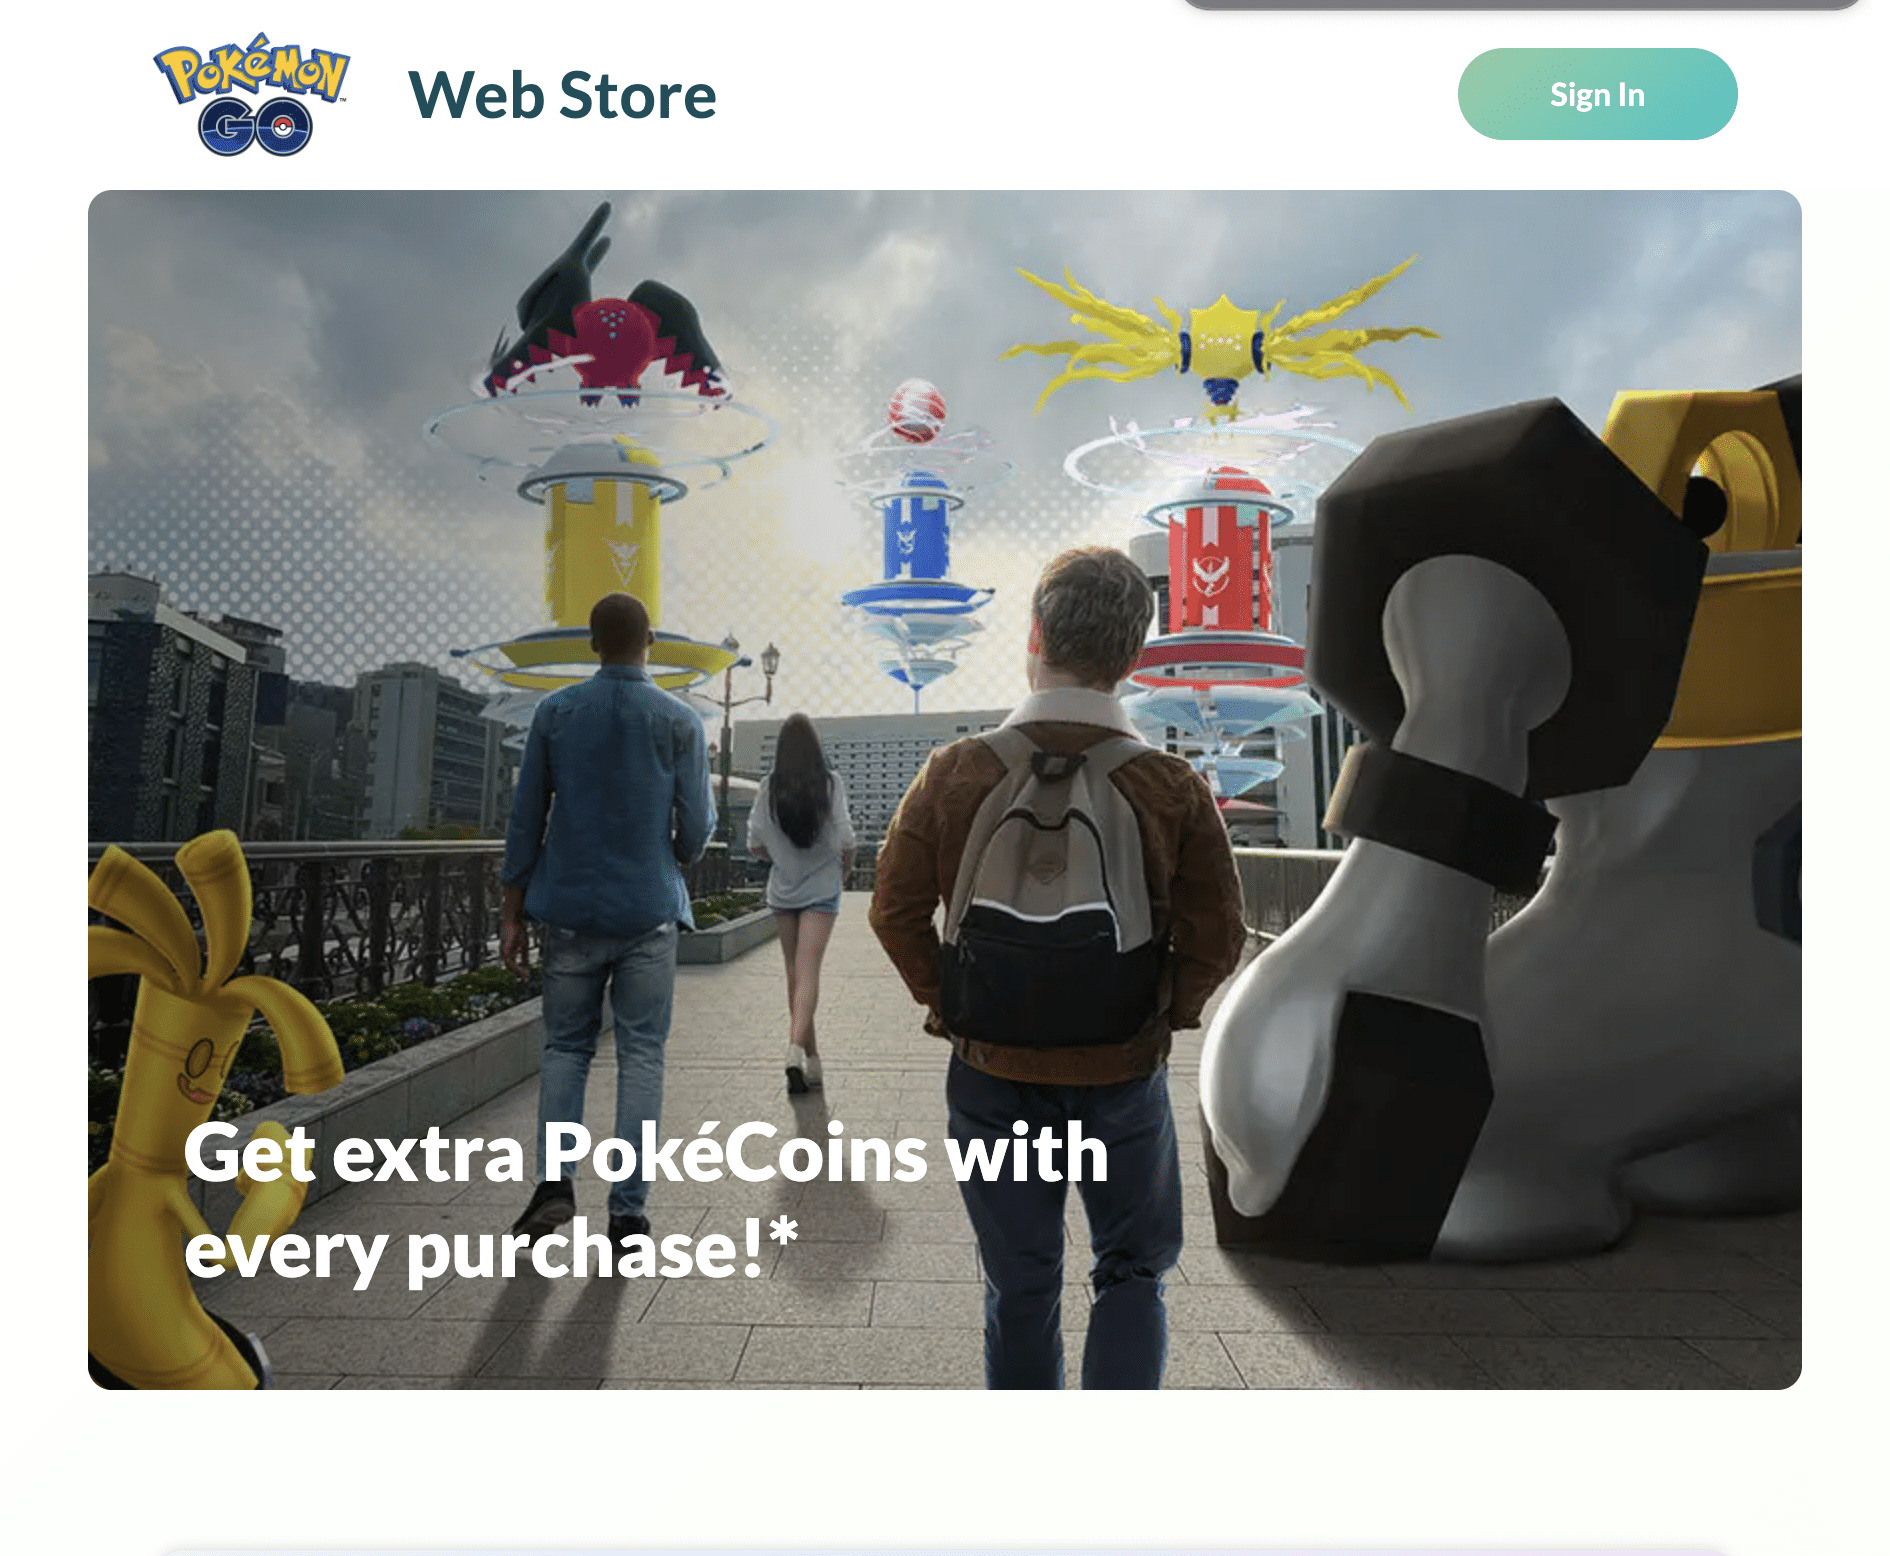 New way to get bonus PokéCoins – Pokémon GO